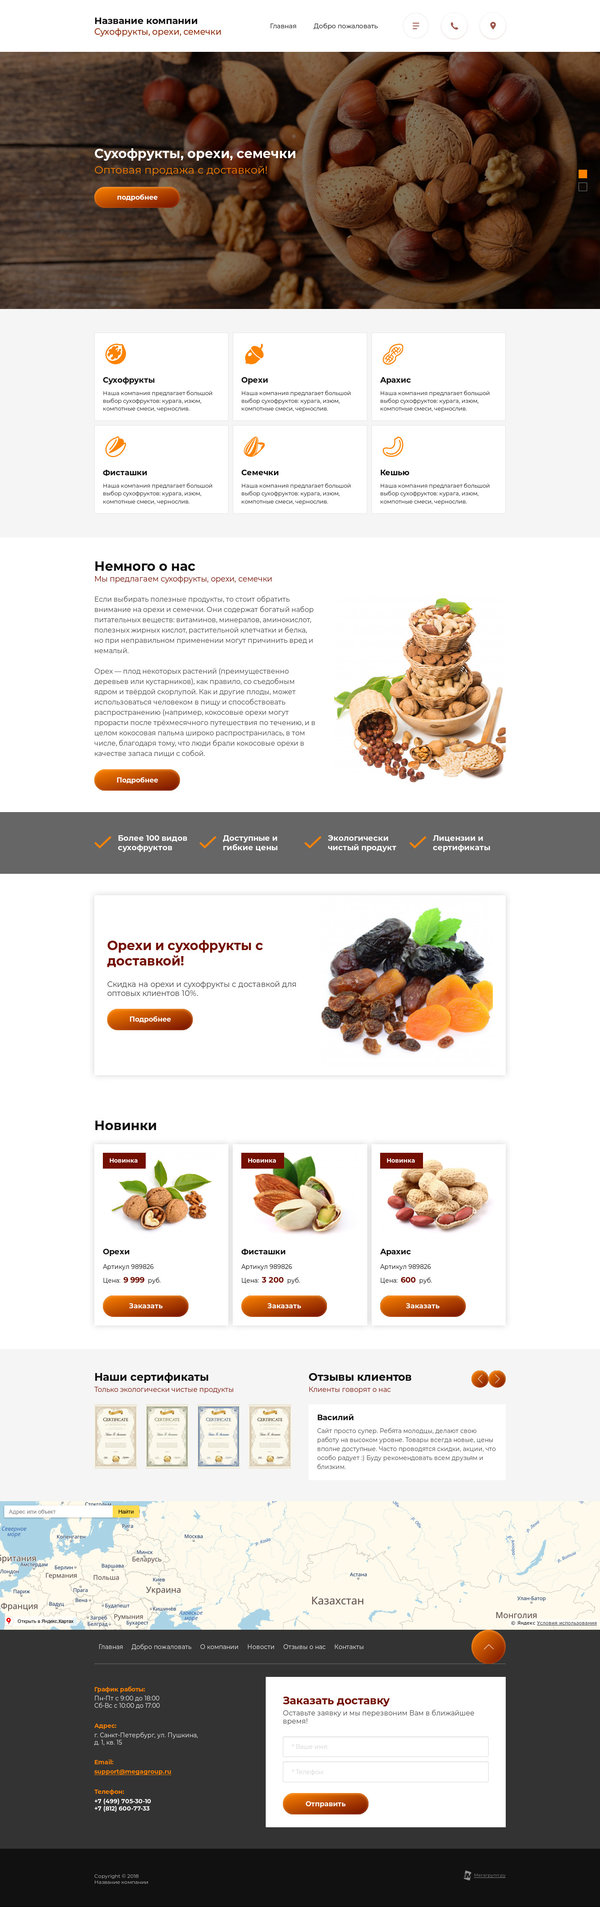 Готовый Сайт-Бизнес № 1996059 - Сухофрукты, орехи, семечки (Десктопная версия)